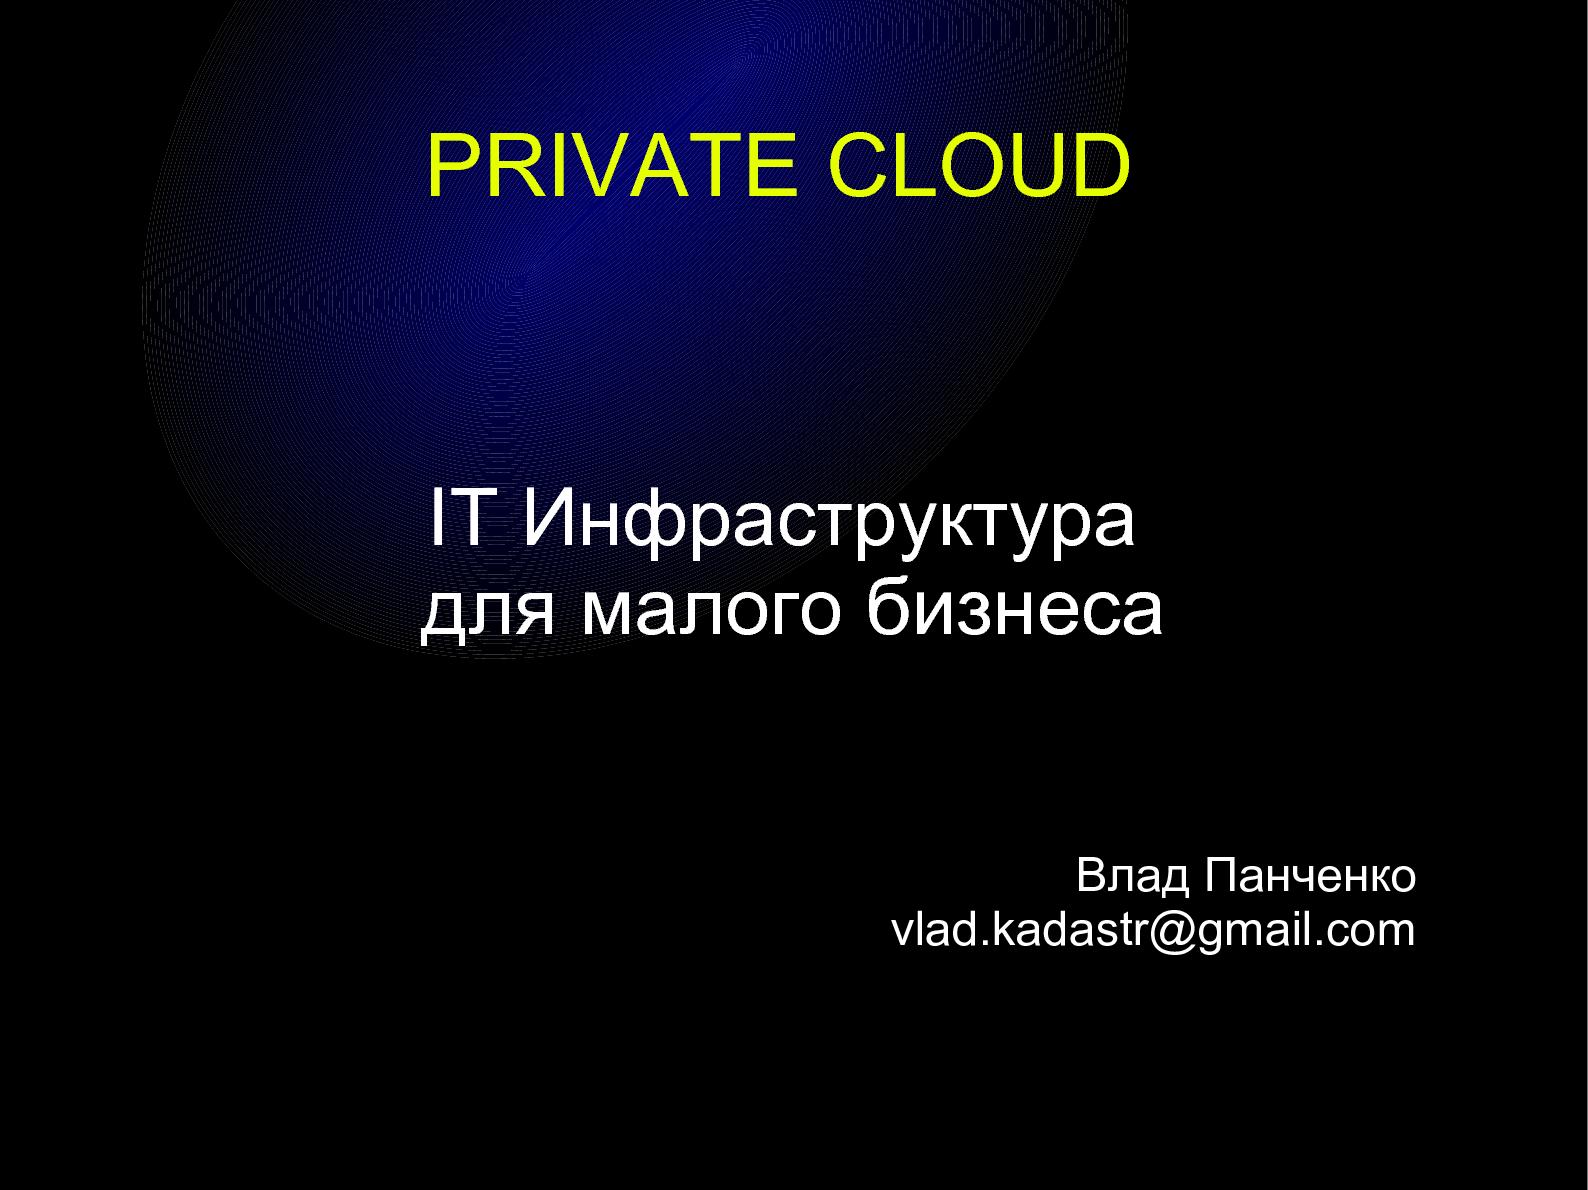 Файл:Приватизируем облако — построение IT-инфраструктуры для малого бизнеса (Влад Панченко, OSDN-UA-2012).pdf